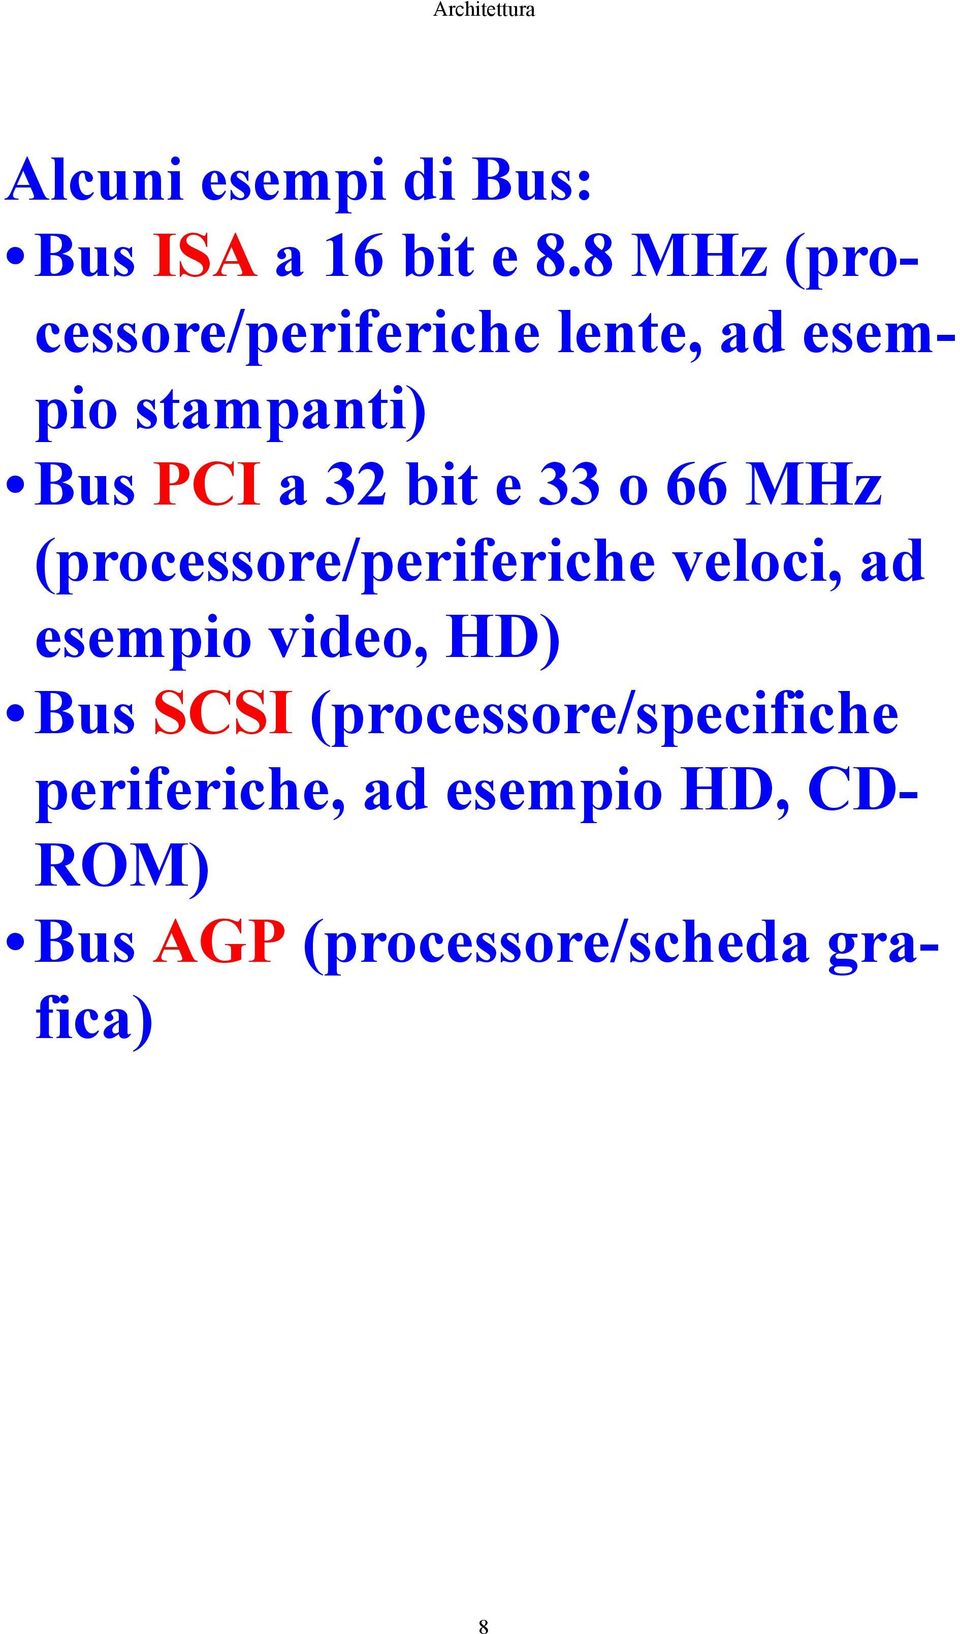 bit e 33 o 66 MHz (processore/periferiche veloci, ad esempio video, HD)